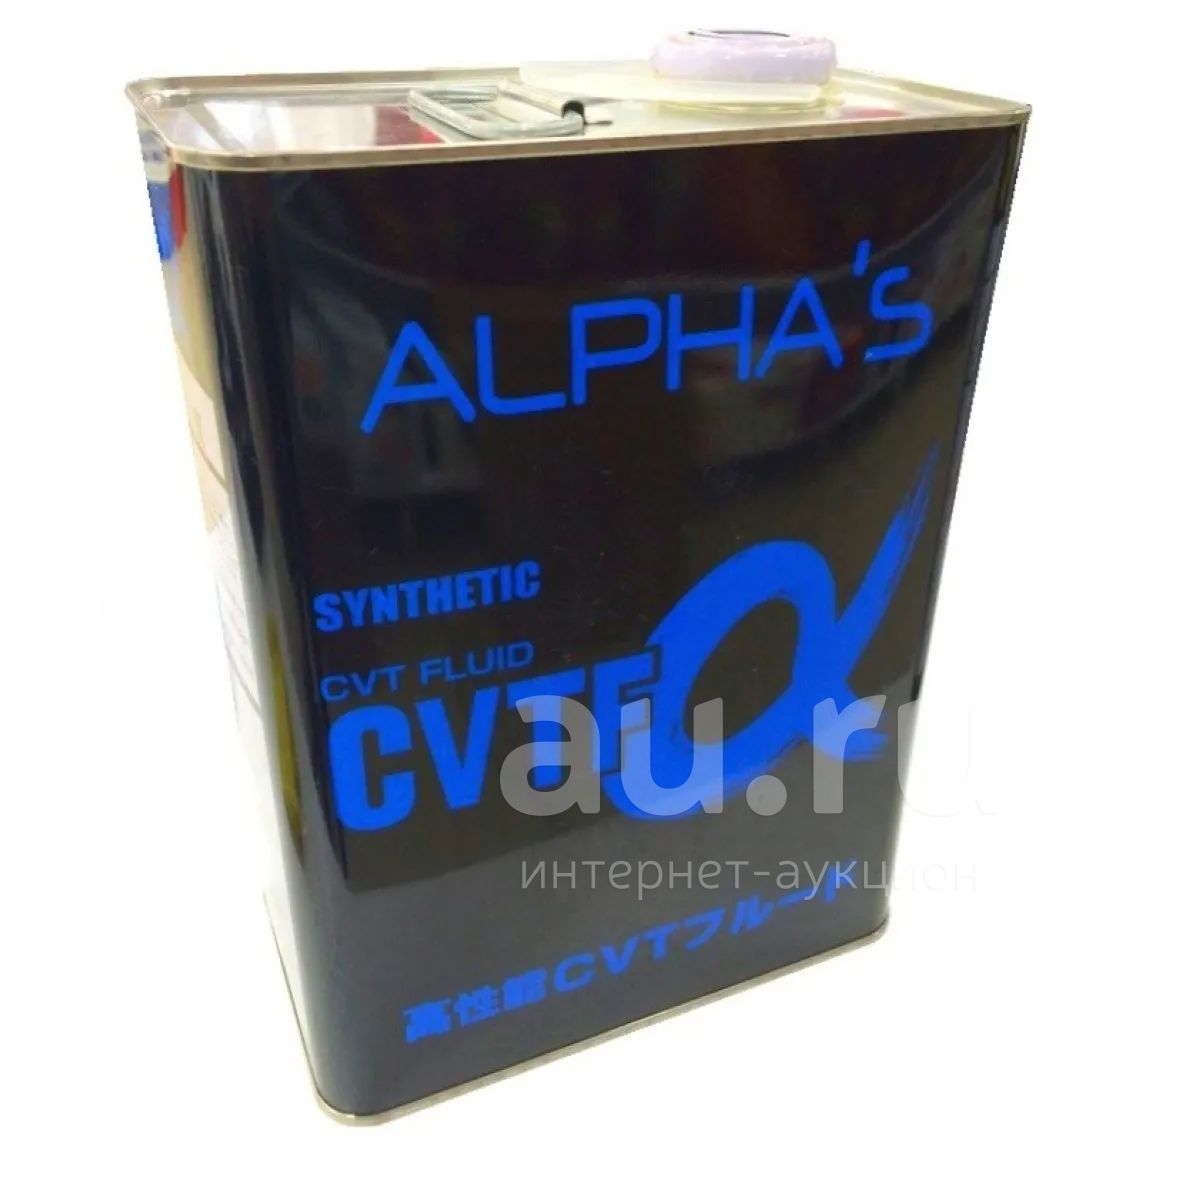 Alpha s love. Масло трансмиссионное Alphas CVTF. Масло sumico ATF CVTF wide 3-d. Масло трансмиссионное CVTF-Alpha синт. 4л. Alpha s 792400 Alphas ATF-Alpha 1l.